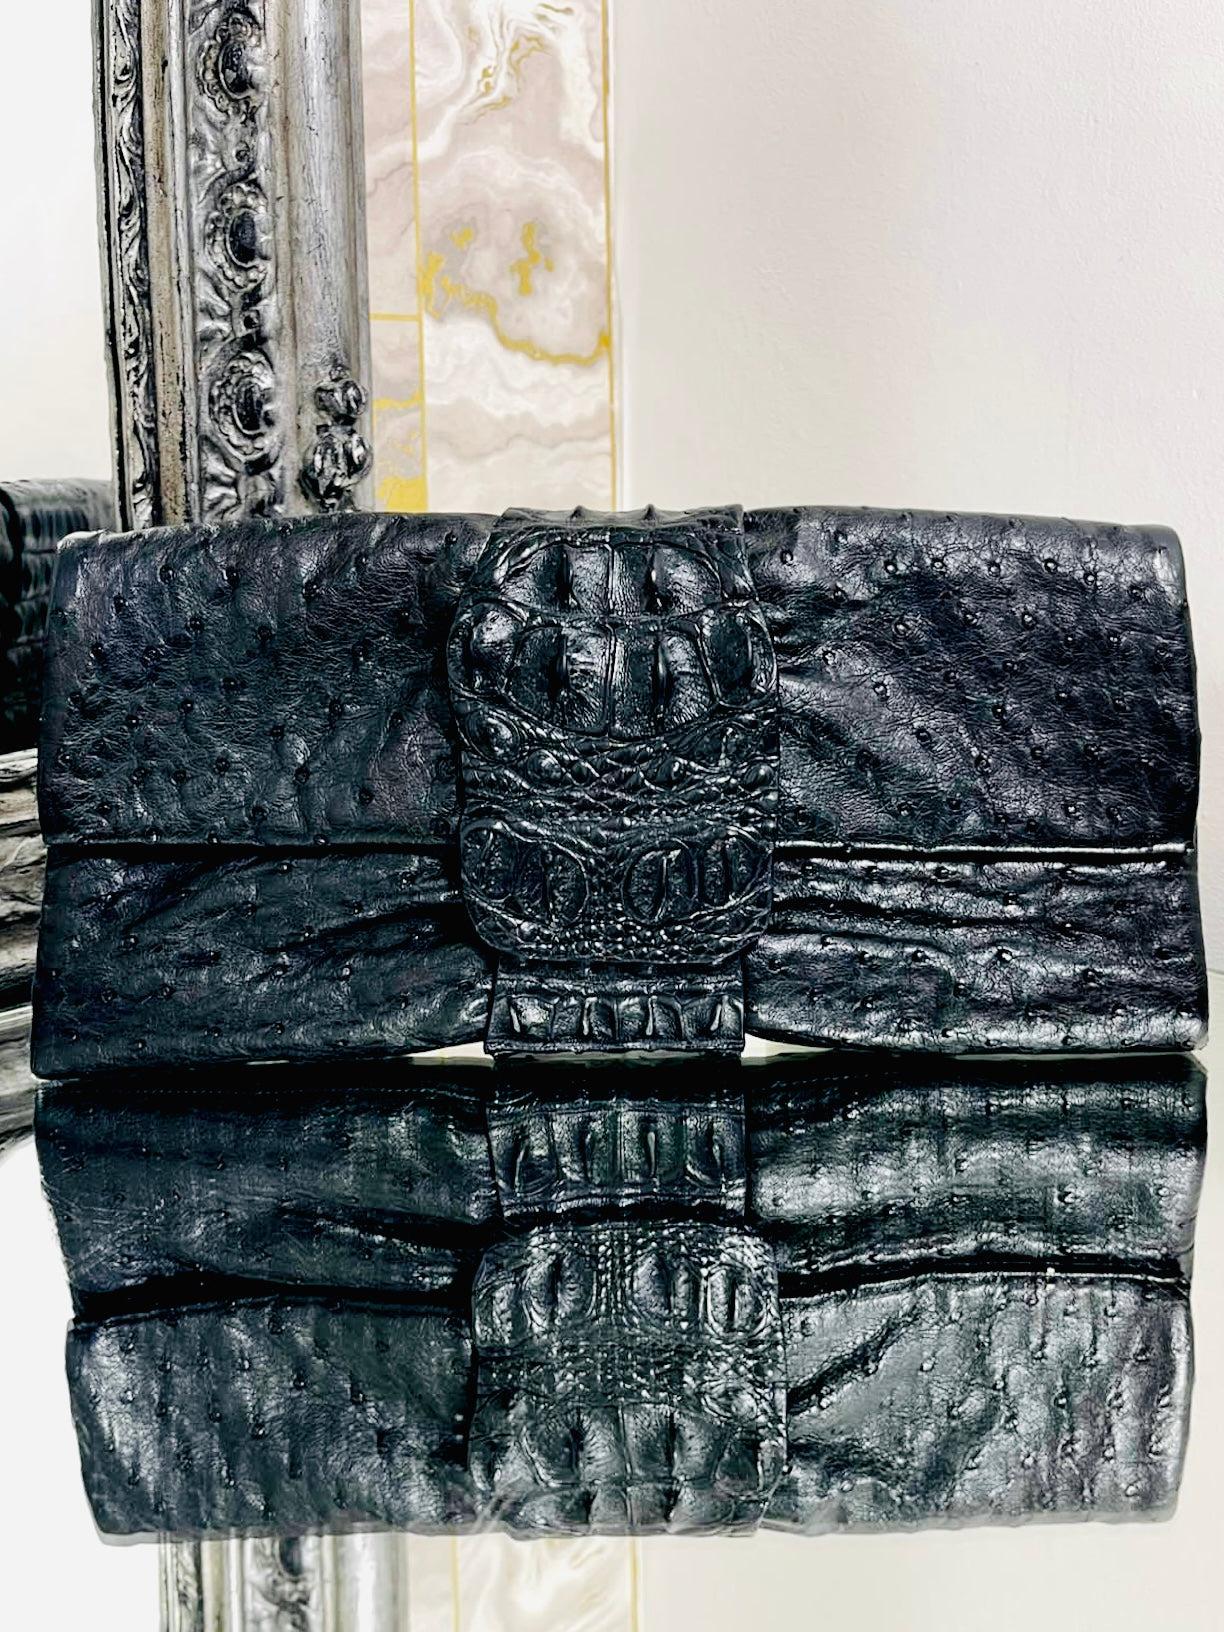 Viva La Moda - Pochette exotique faite à la main 

Peau d'autruche noire, avec une bande en crocodile à fermeture magnétique et une doublure en cuir jaune vif.

Informations complémentaires :
Taille - 30 L x 4 P x 15 H cm
Composition - Peau